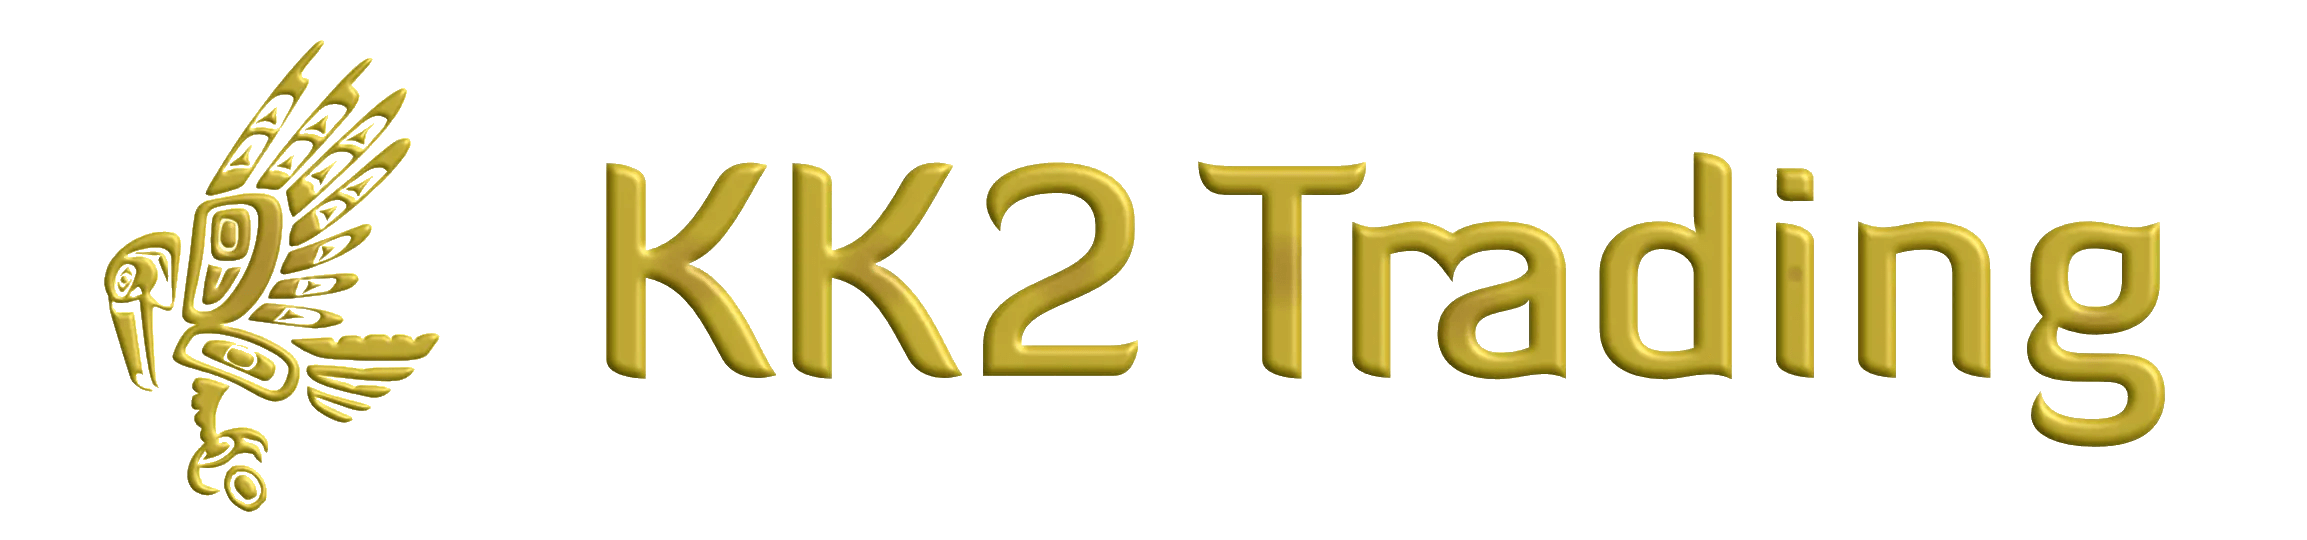 Support KK2 Trading